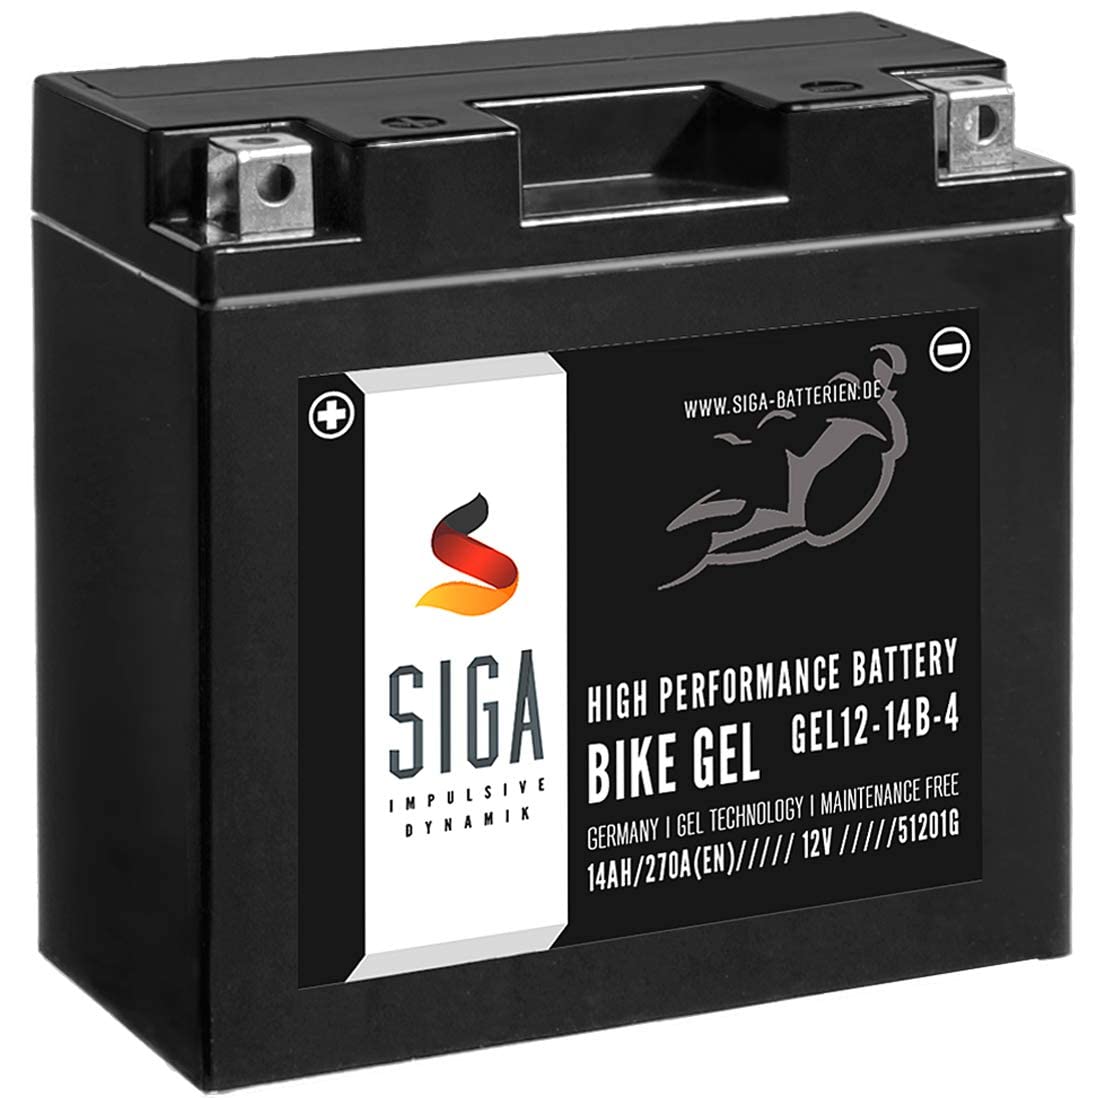 SIGA GEL Motorradbatterie 12V 14Ah 270A/EN GEL Batterie YT14B-4 GEL12-14B-4 GTZ14B-4 YT14B-BS 51201 51221 von SIGA IMPULSIVE DYNAMIK